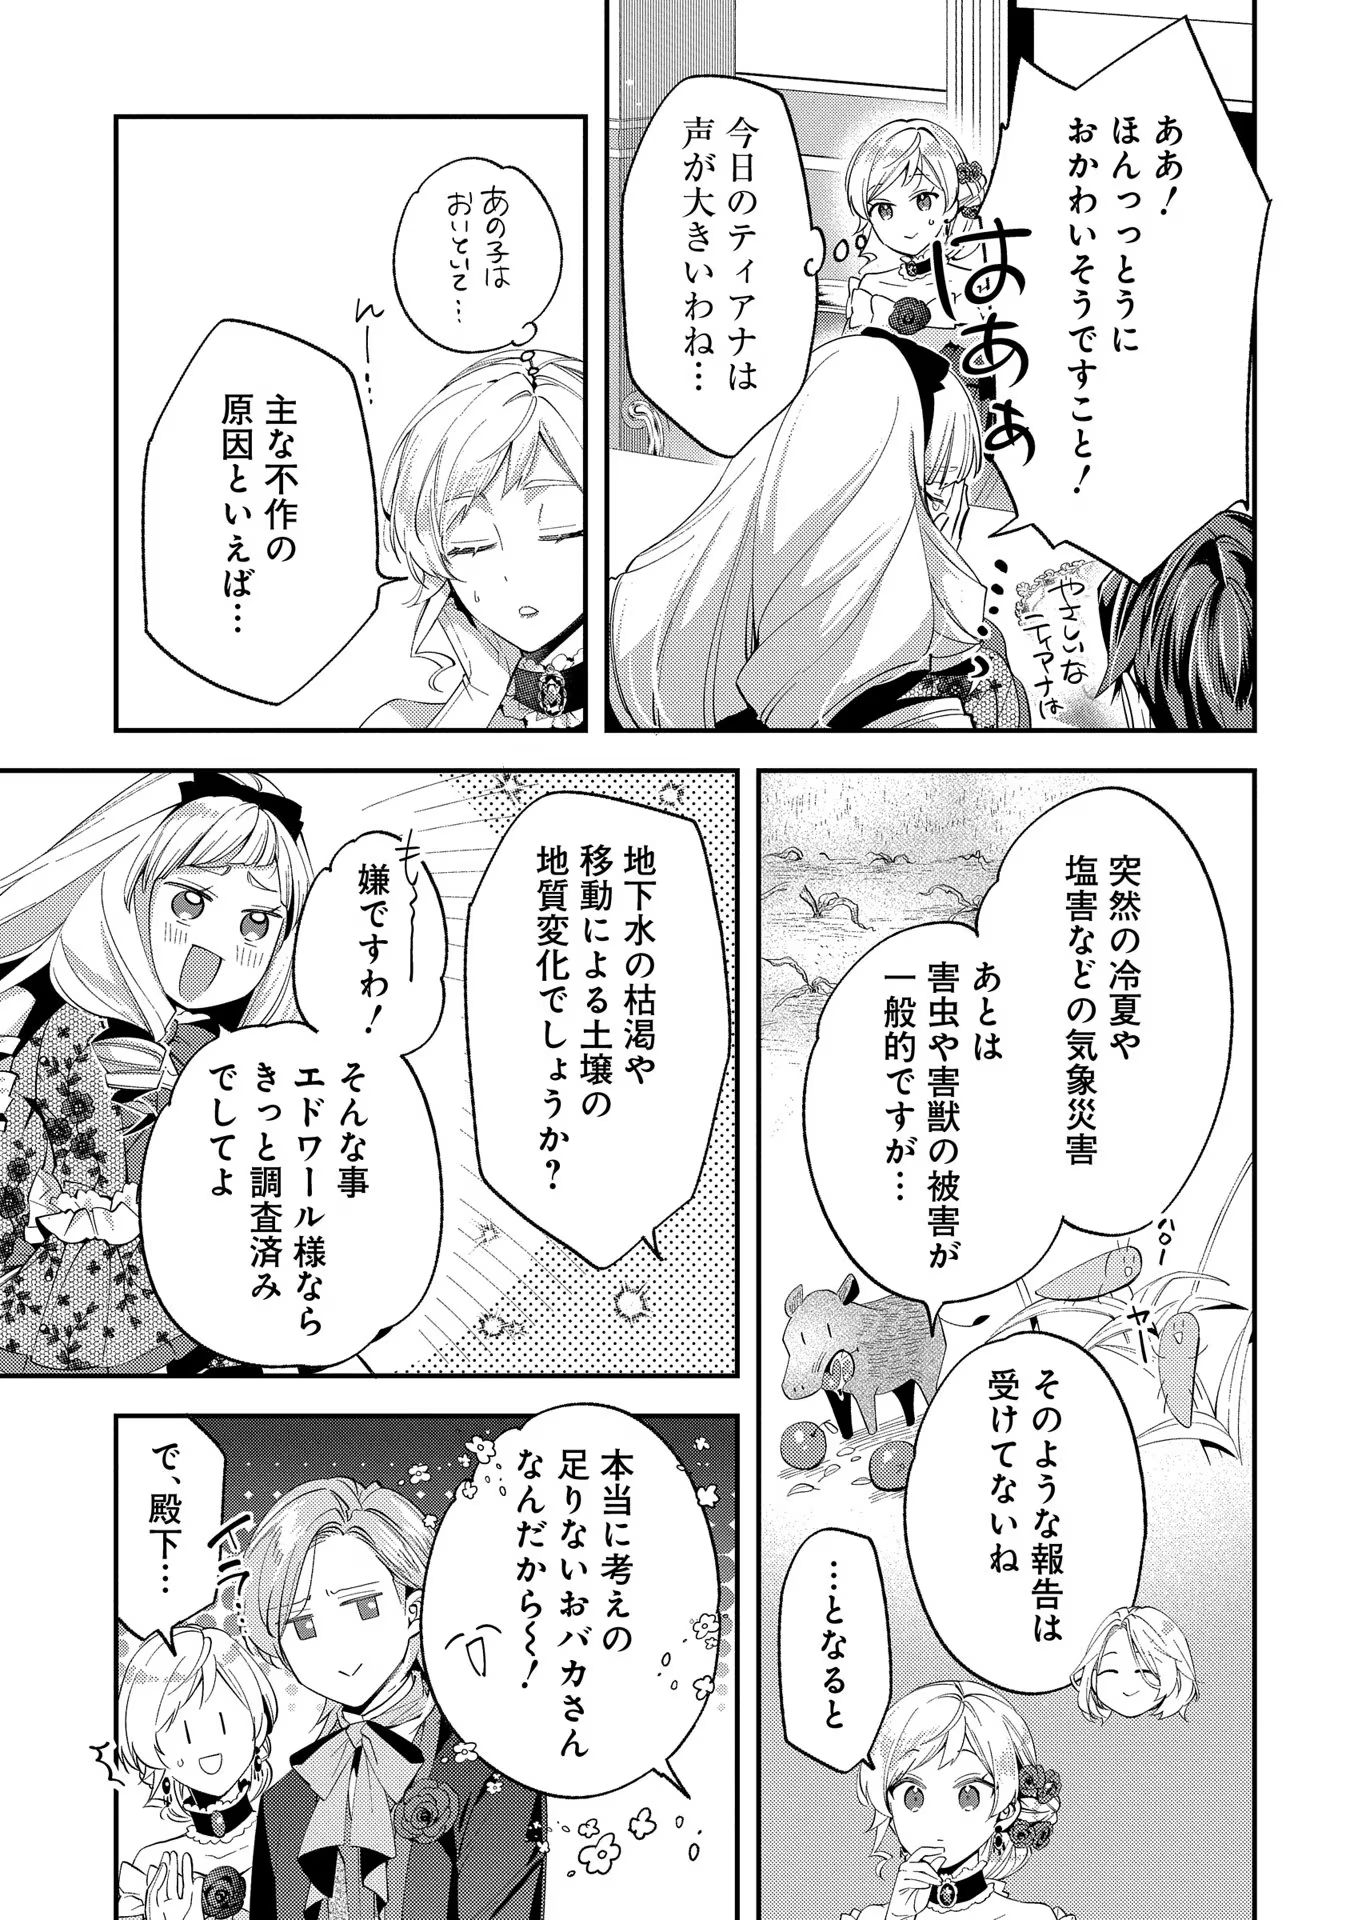 Outaishi ni Konyaku Hakisareta no de, Mou Baka no Furi wa Yameyou to Omoimasu - Chapter 11 - Page 25